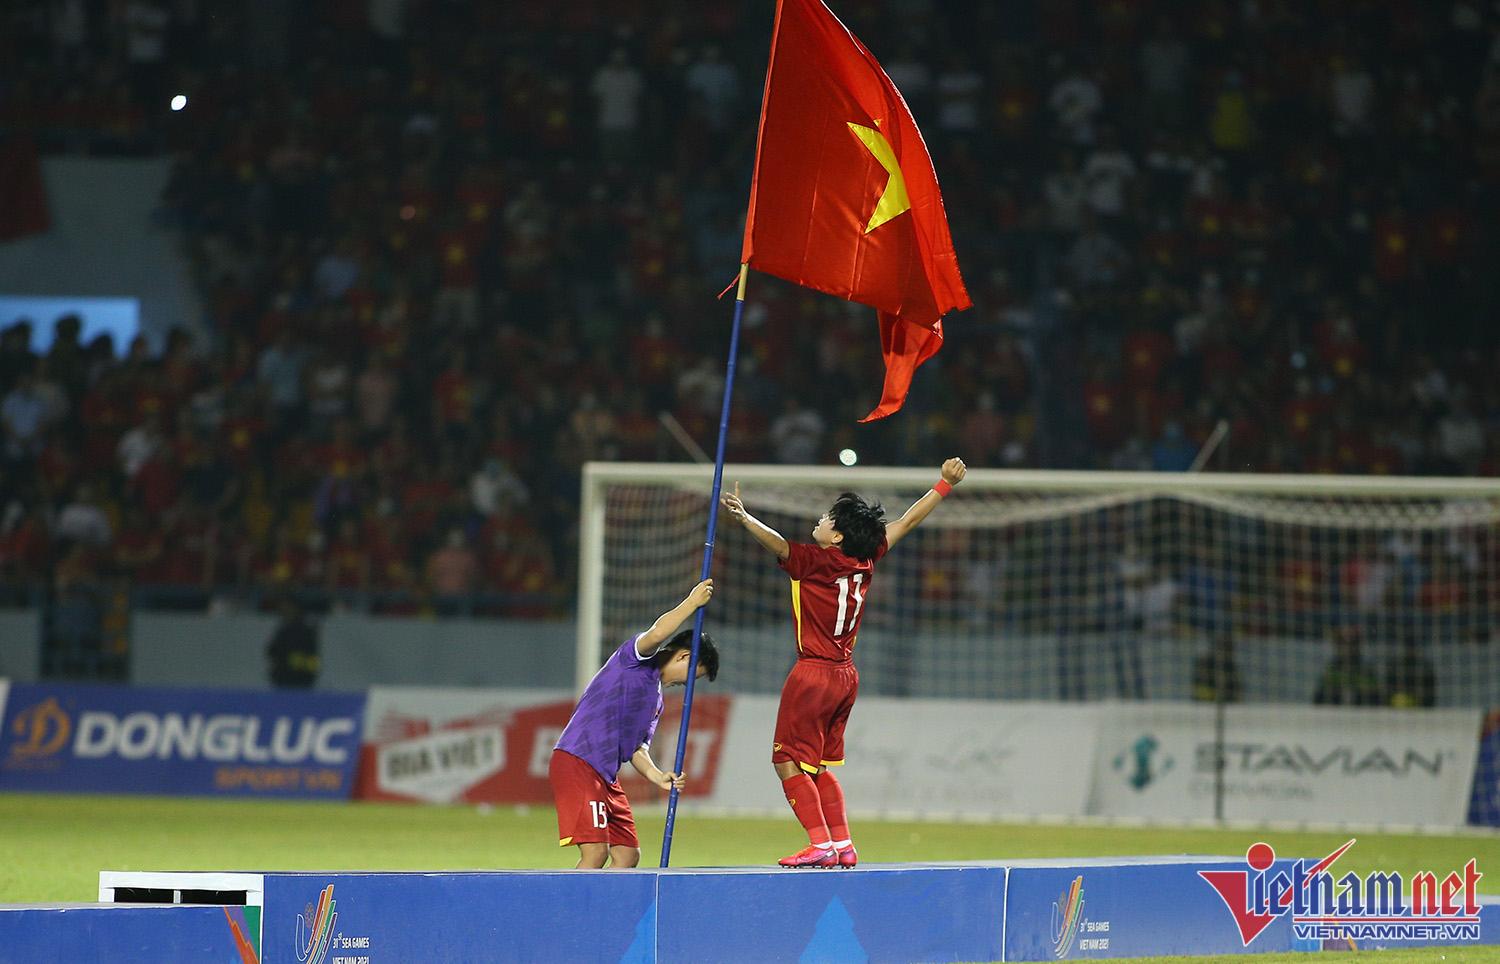 Xúc động hình ảnh cầu thủ nữ Việt Nam cắm cờ Tổ quốc trên bục nhận huy chương - Ảnh 10.